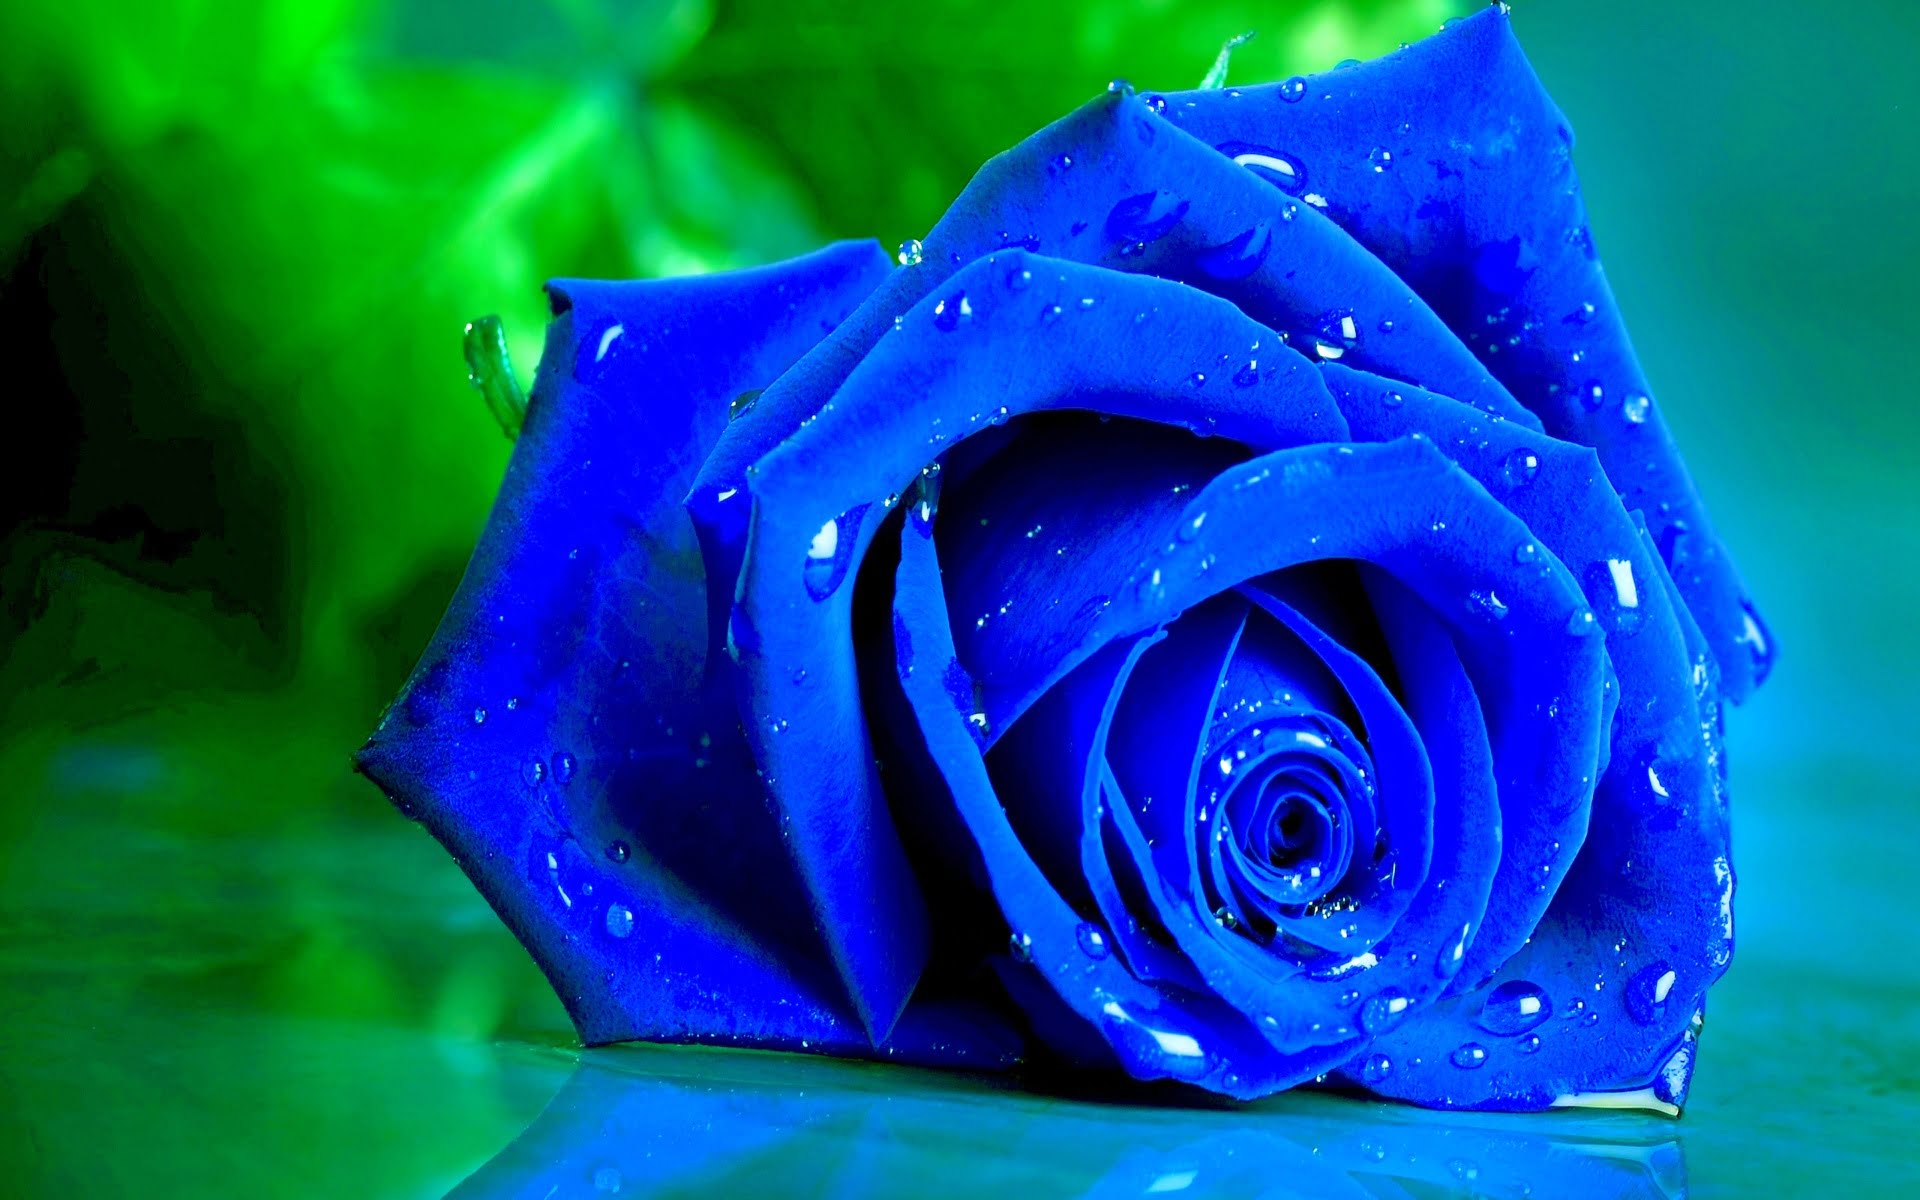 Hoa hồng xanh lơ tuyệt rất đẹp đem nhiều ý nghĩa